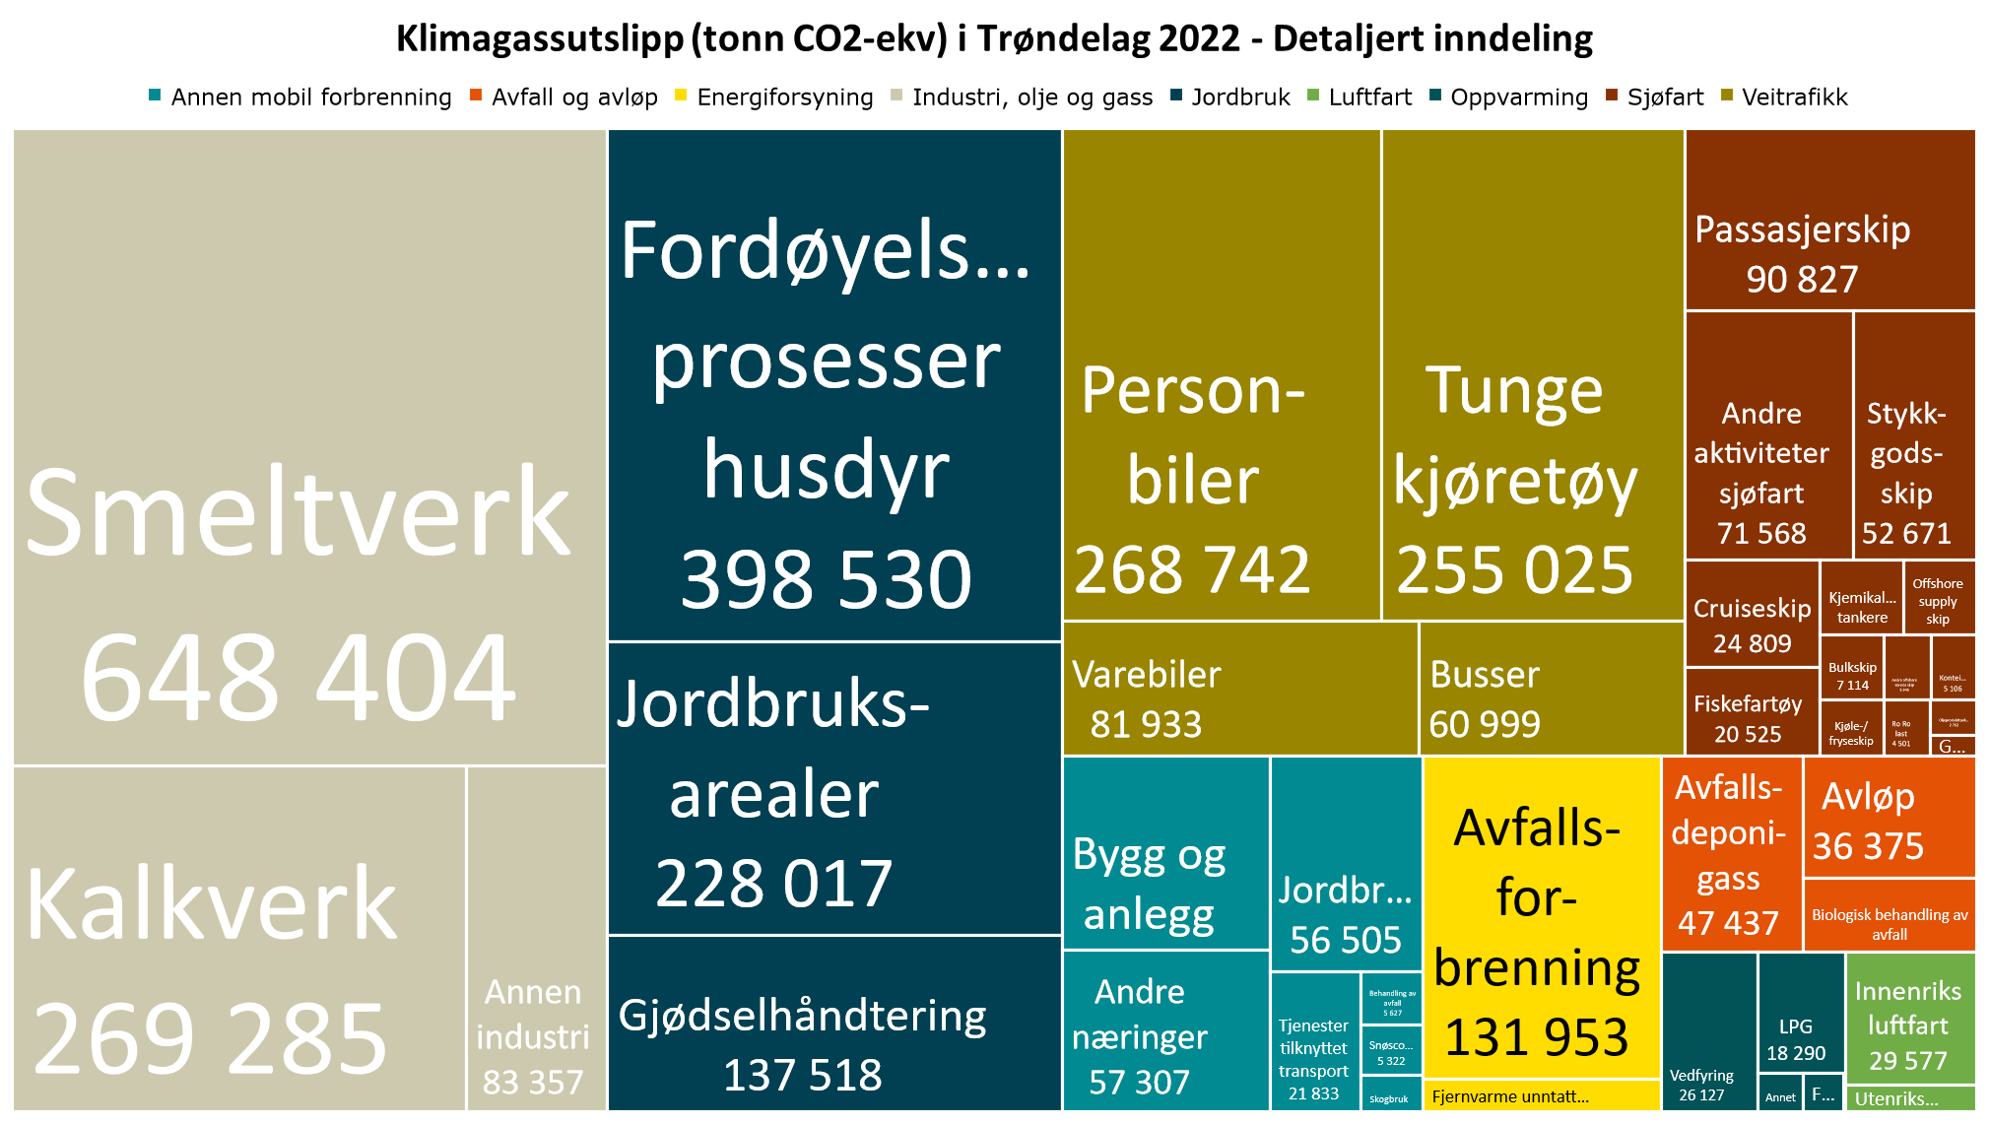 Klimagassutslipp (tonn CO2-ekv) i Trøndelag 2022 - Detaljert inndeling